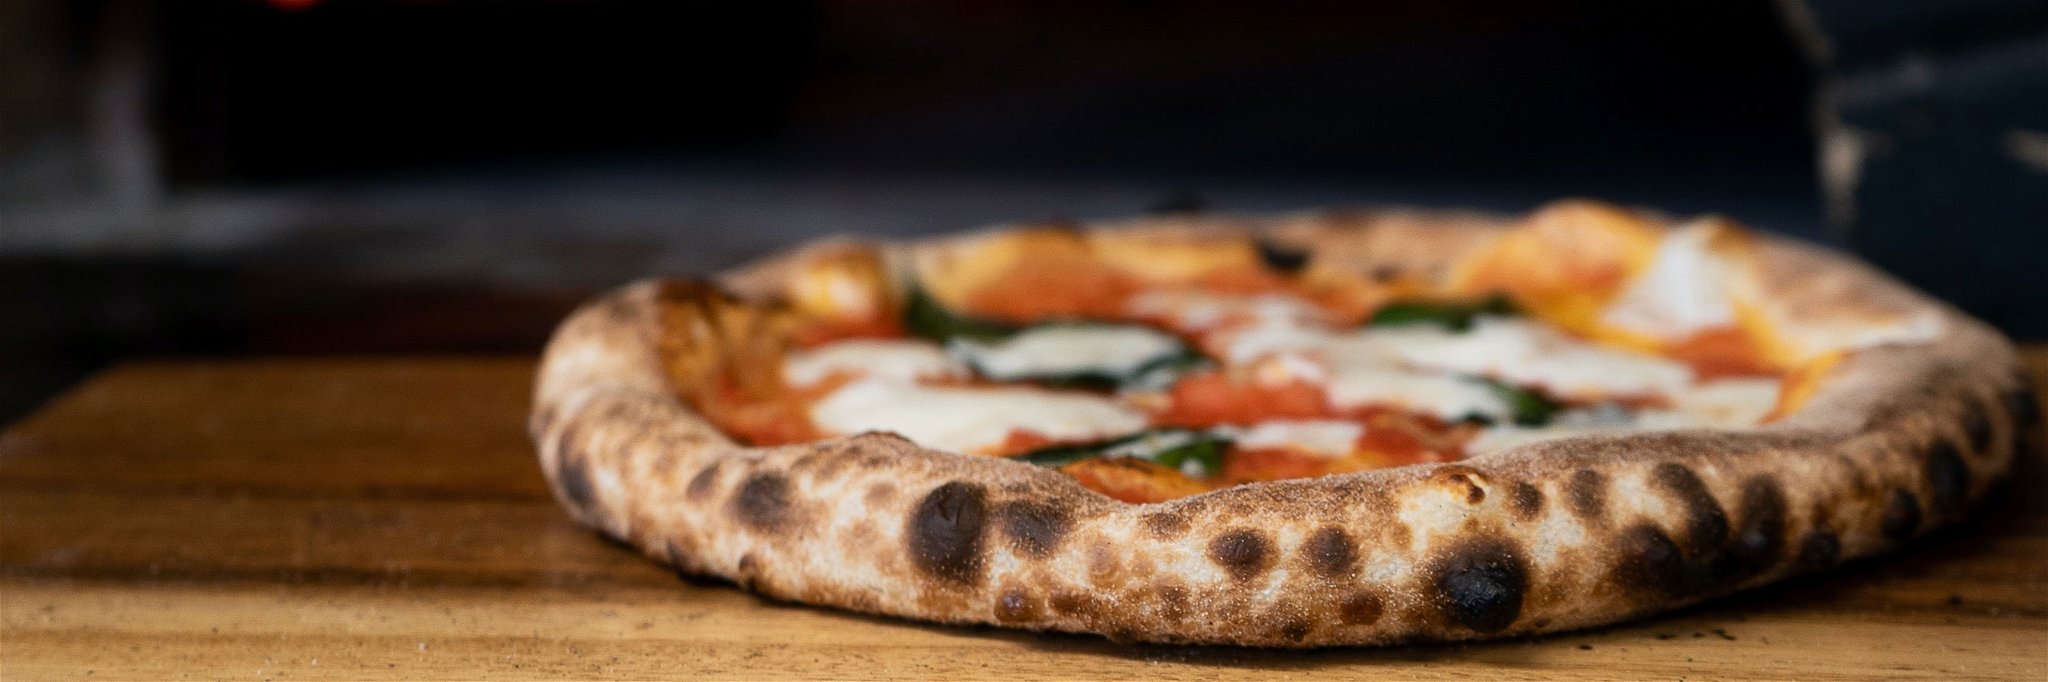 Die »Settimana della Cucina Italiana nel Mondo« zelebriert eine Woche weitweit die italienische Küche.